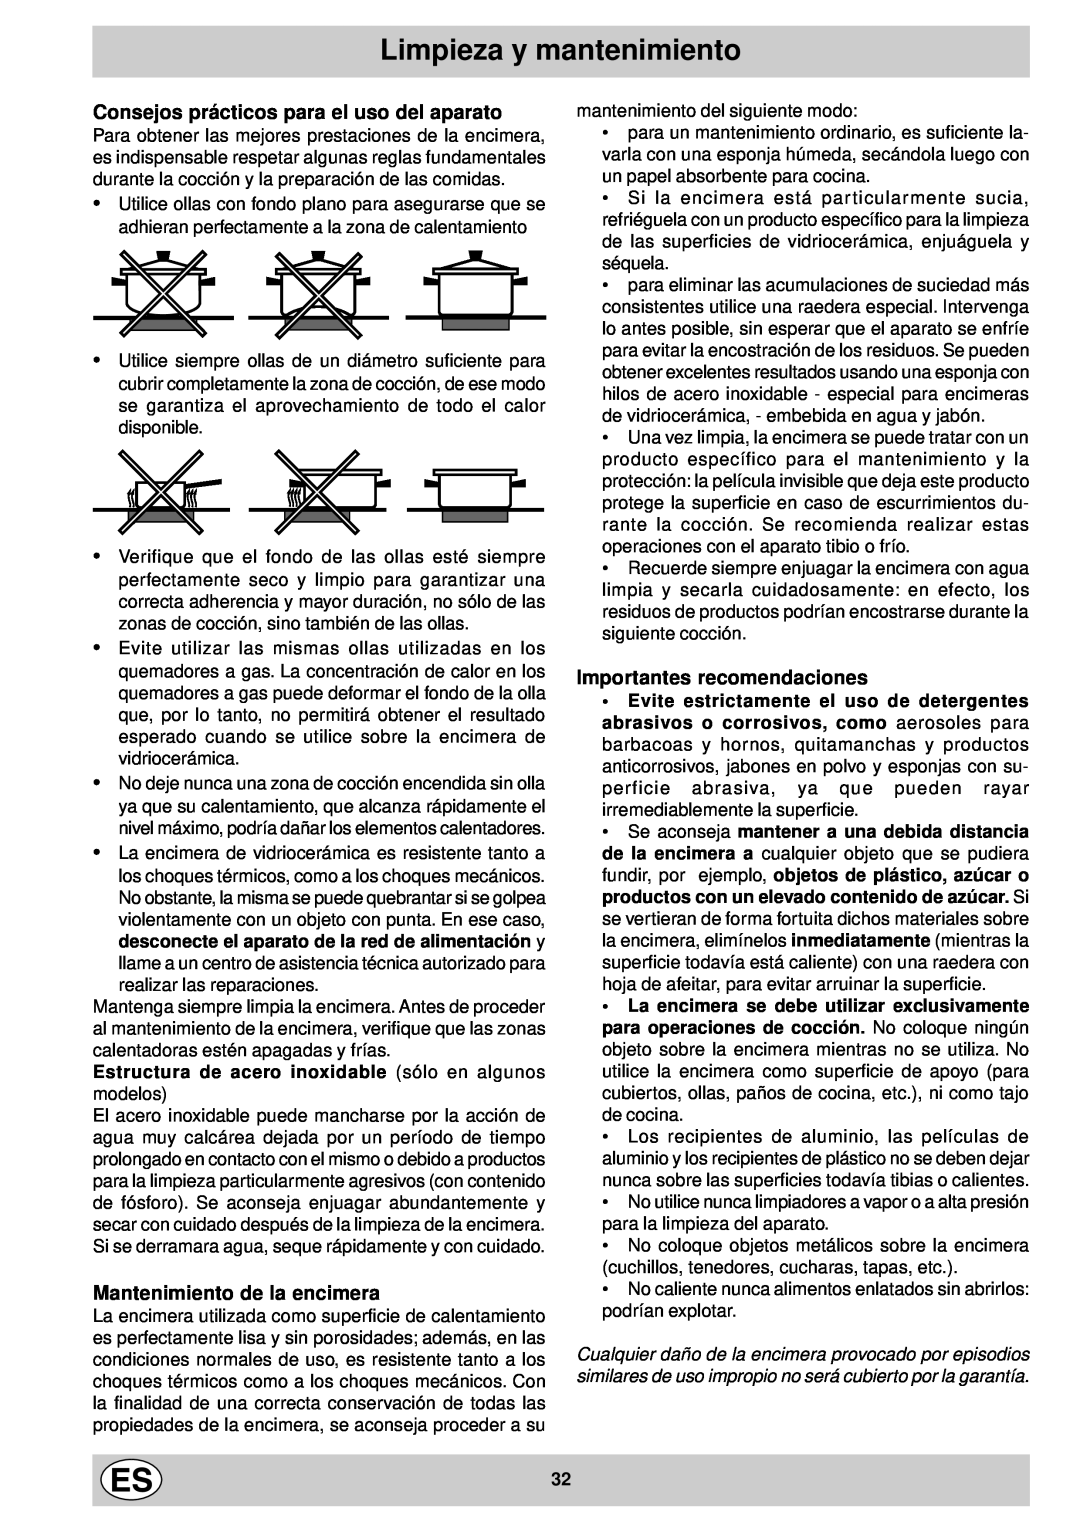 Indesit mk 64 r manual Limpieza y mantenimiento, Consejos prácticos para el uso del aparato, Mantenimiento de la encimera 